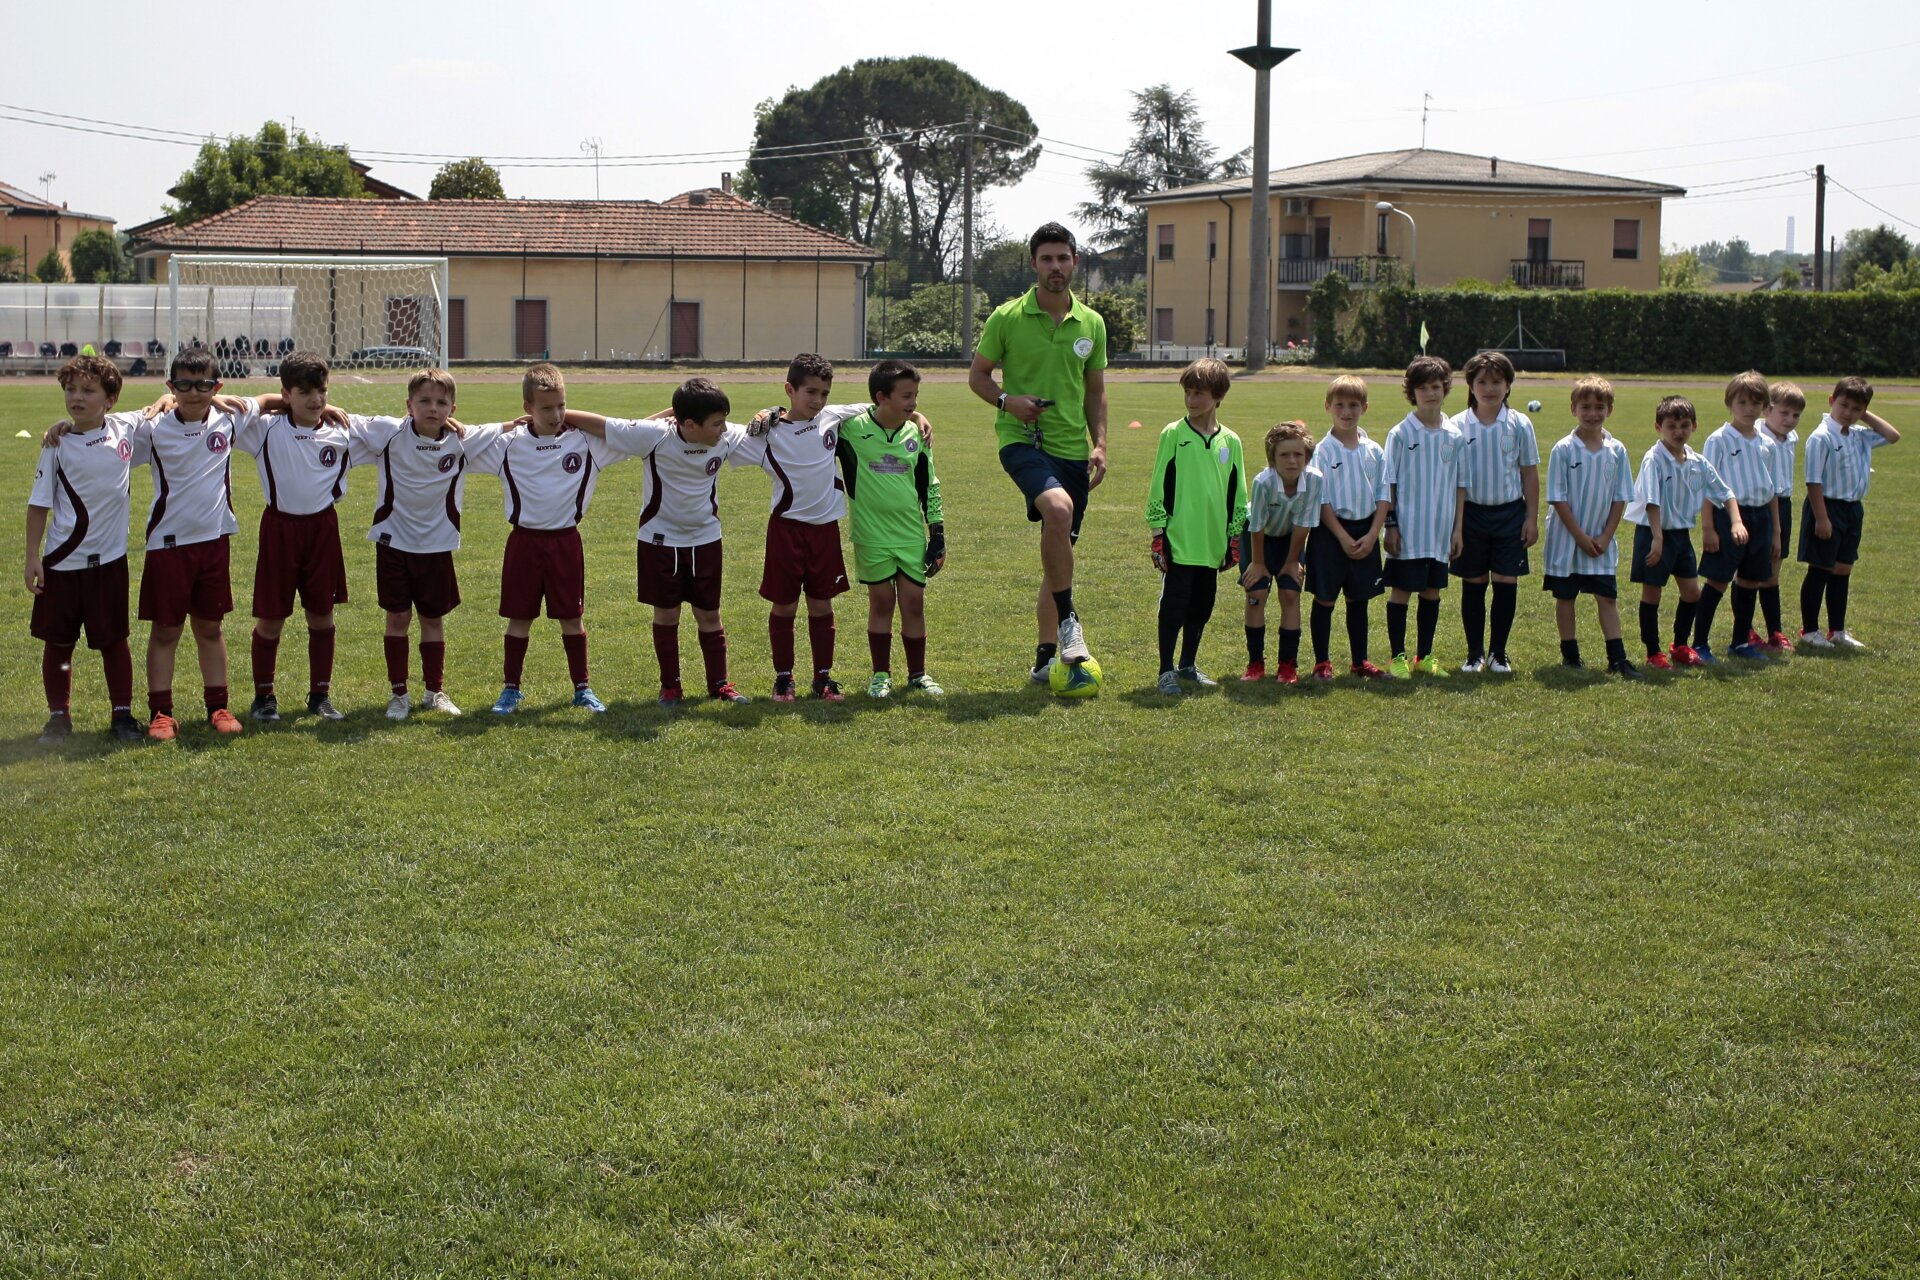 Fara Gera d'Adda Un momento del minitorneo con le squadre dei piccoli calciatori, nell'ambito del primo Memorial Ernesto Modanesi per squadre Under 18 2